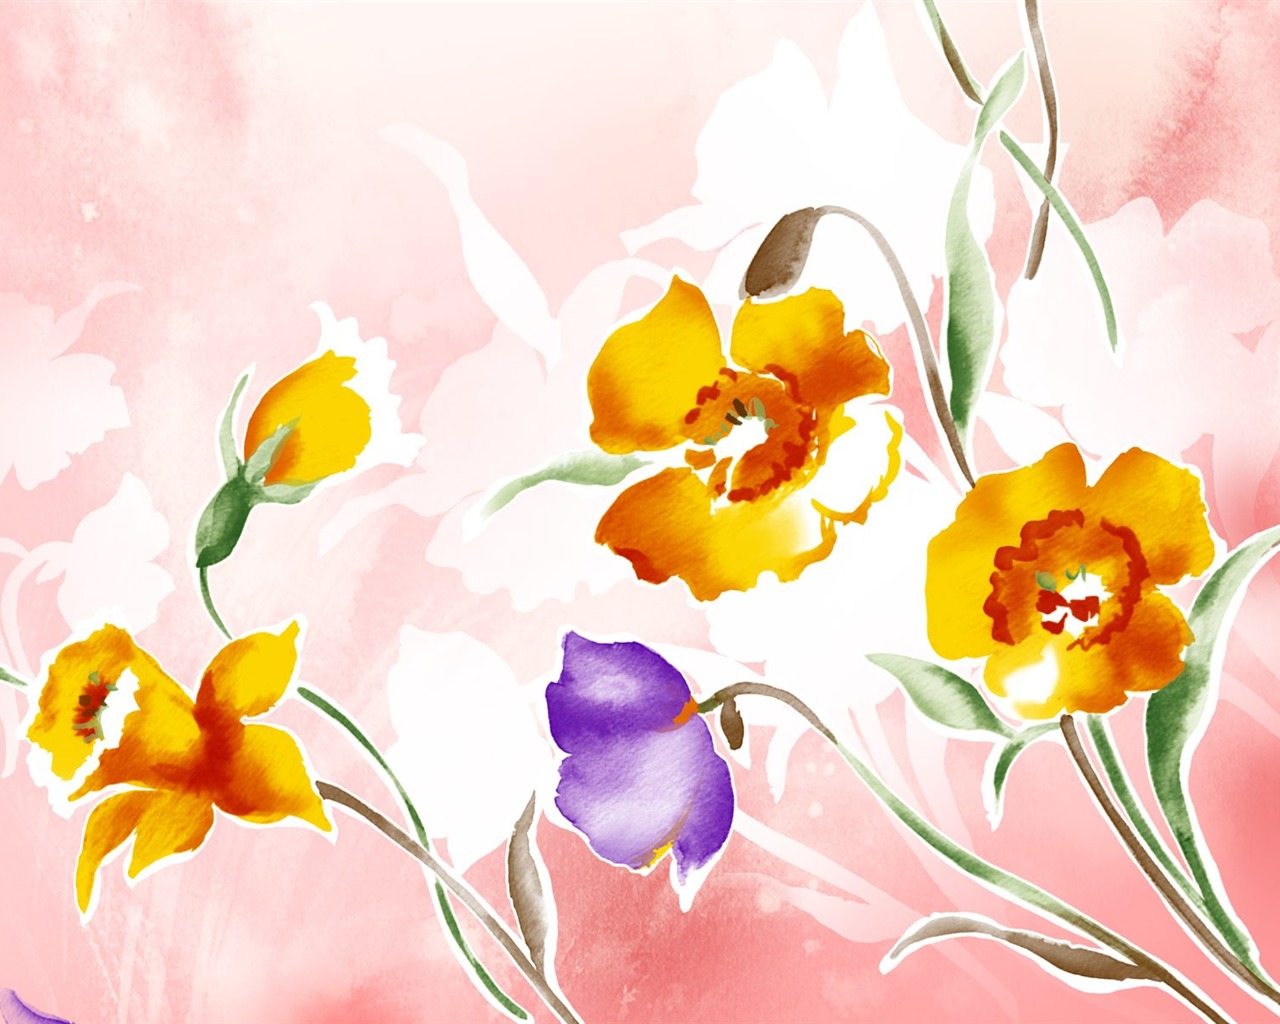 花卉图案插画设计壁纸22 - 1280x1024